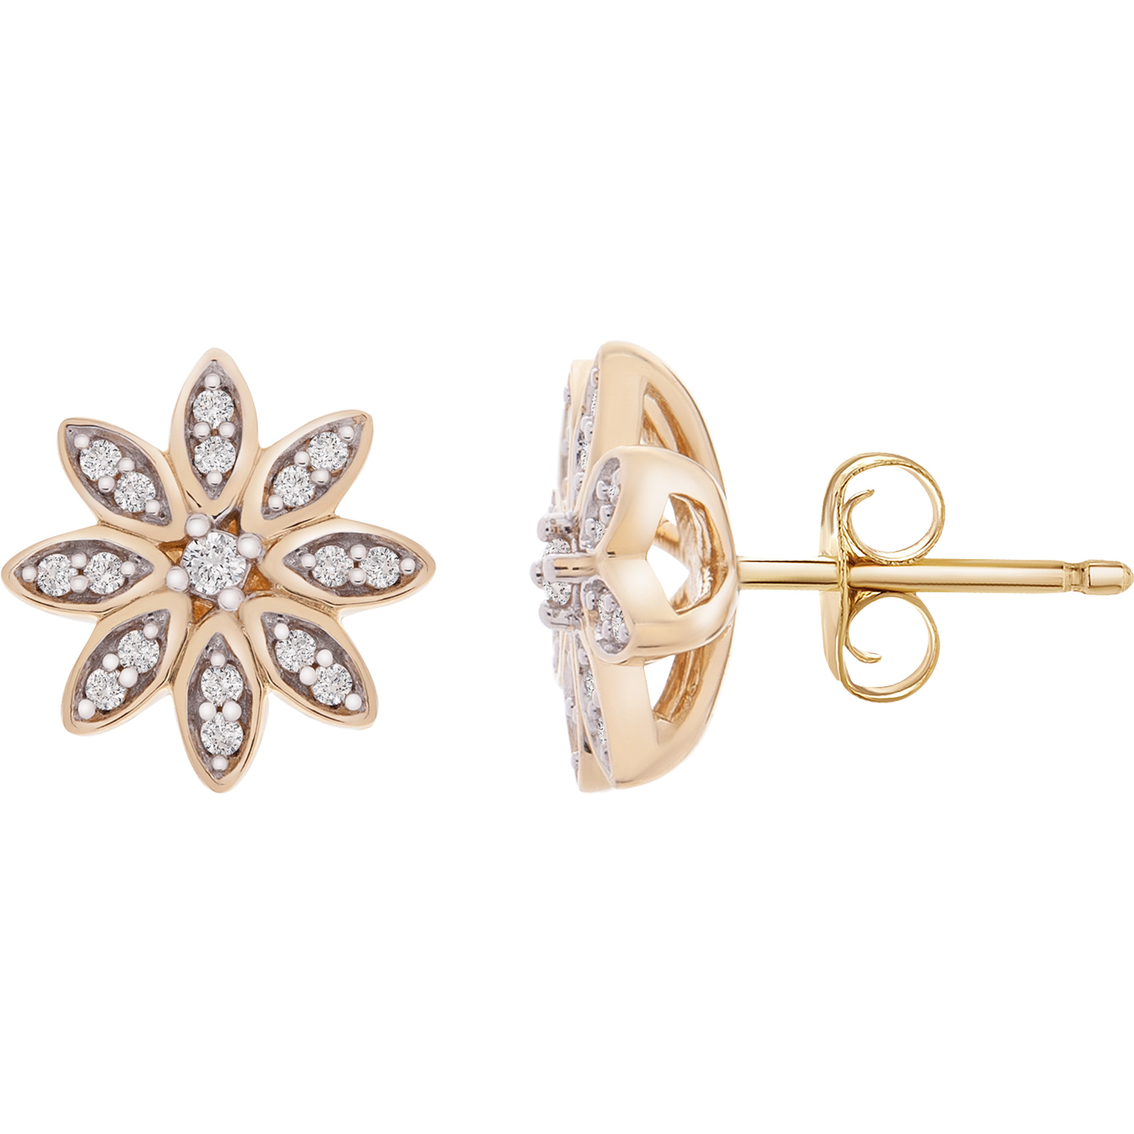 10k Yellow Gold Diamond Accent Flower Earrings | Diamond Stud Earrings ...